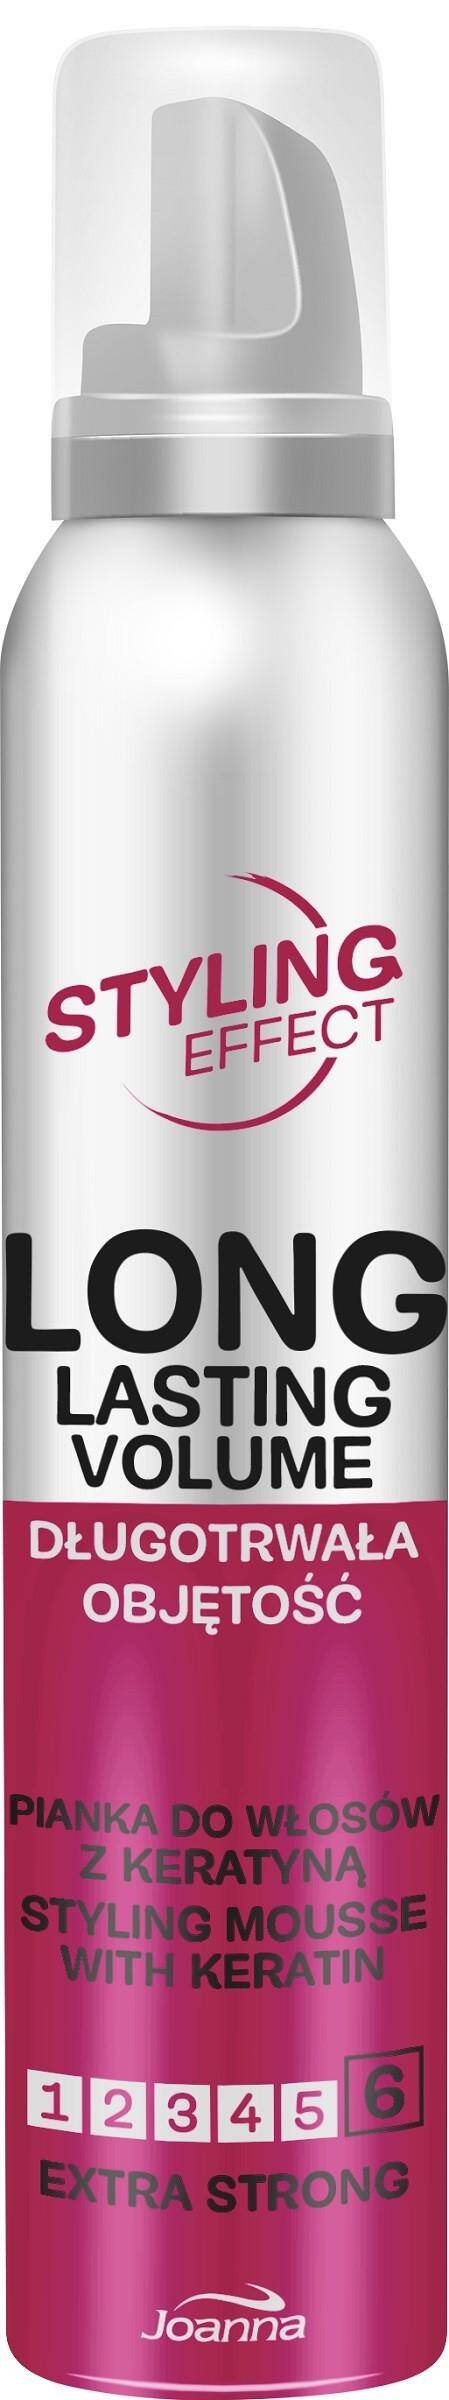 Joanna Styling Effect pianka do włosów